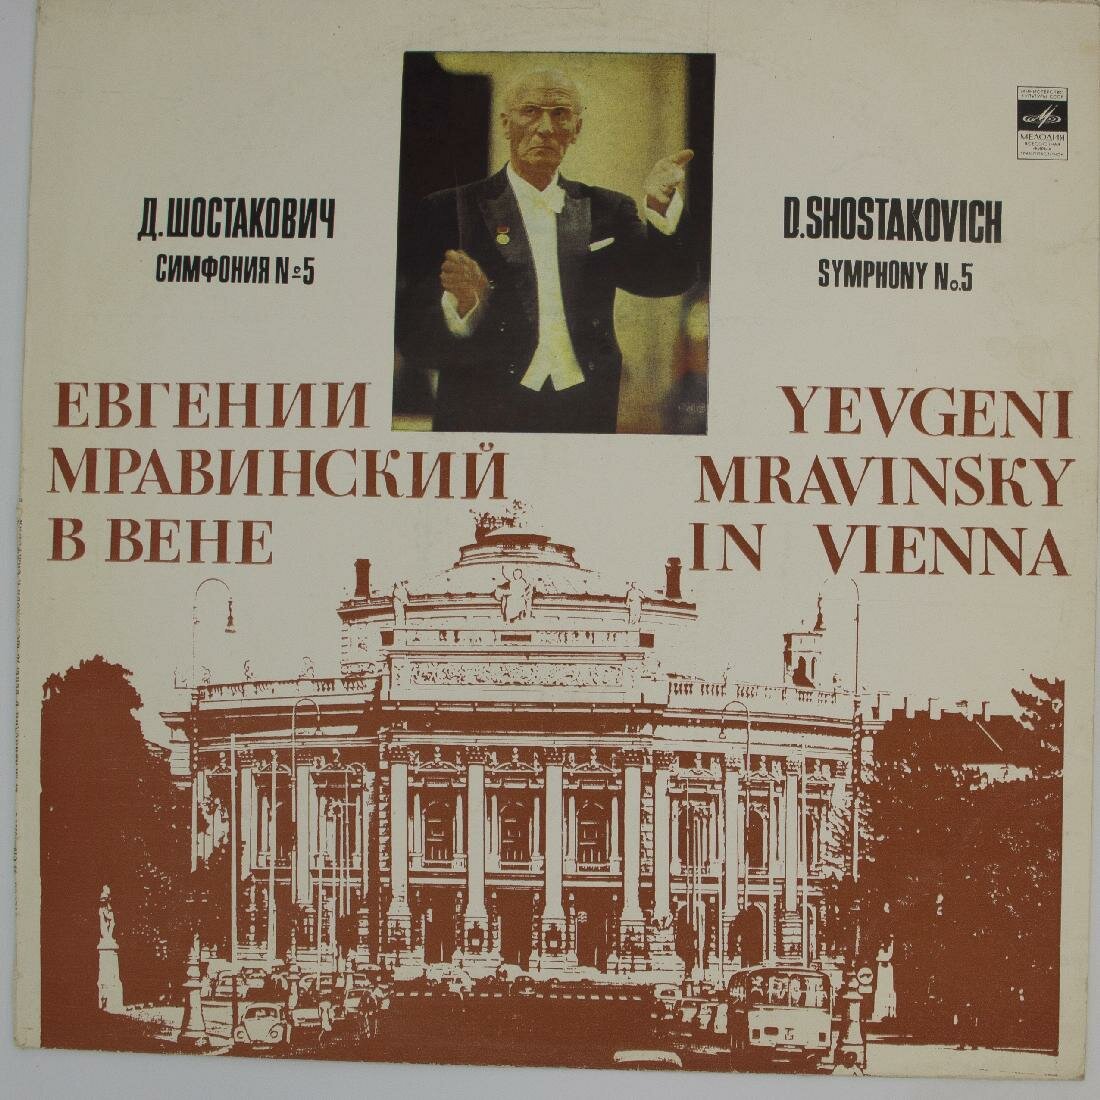 Виниловая пластинка Д. Шостакович - Симфония №5. Евгений Мр